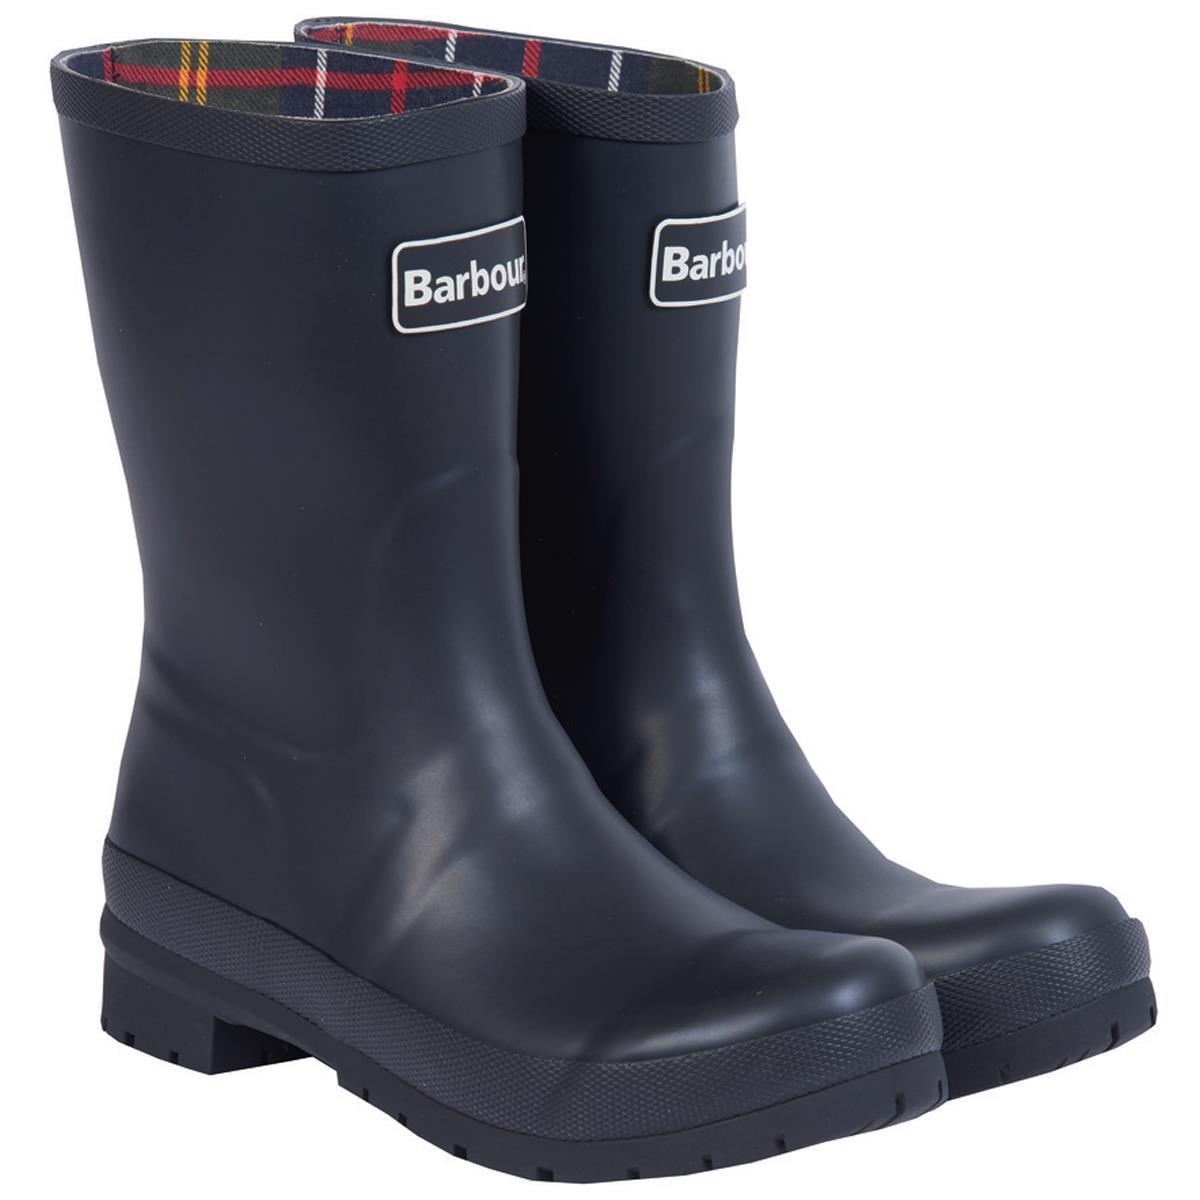 Barbour Womens Banbury Wellington Boots Black 4 (EU37)